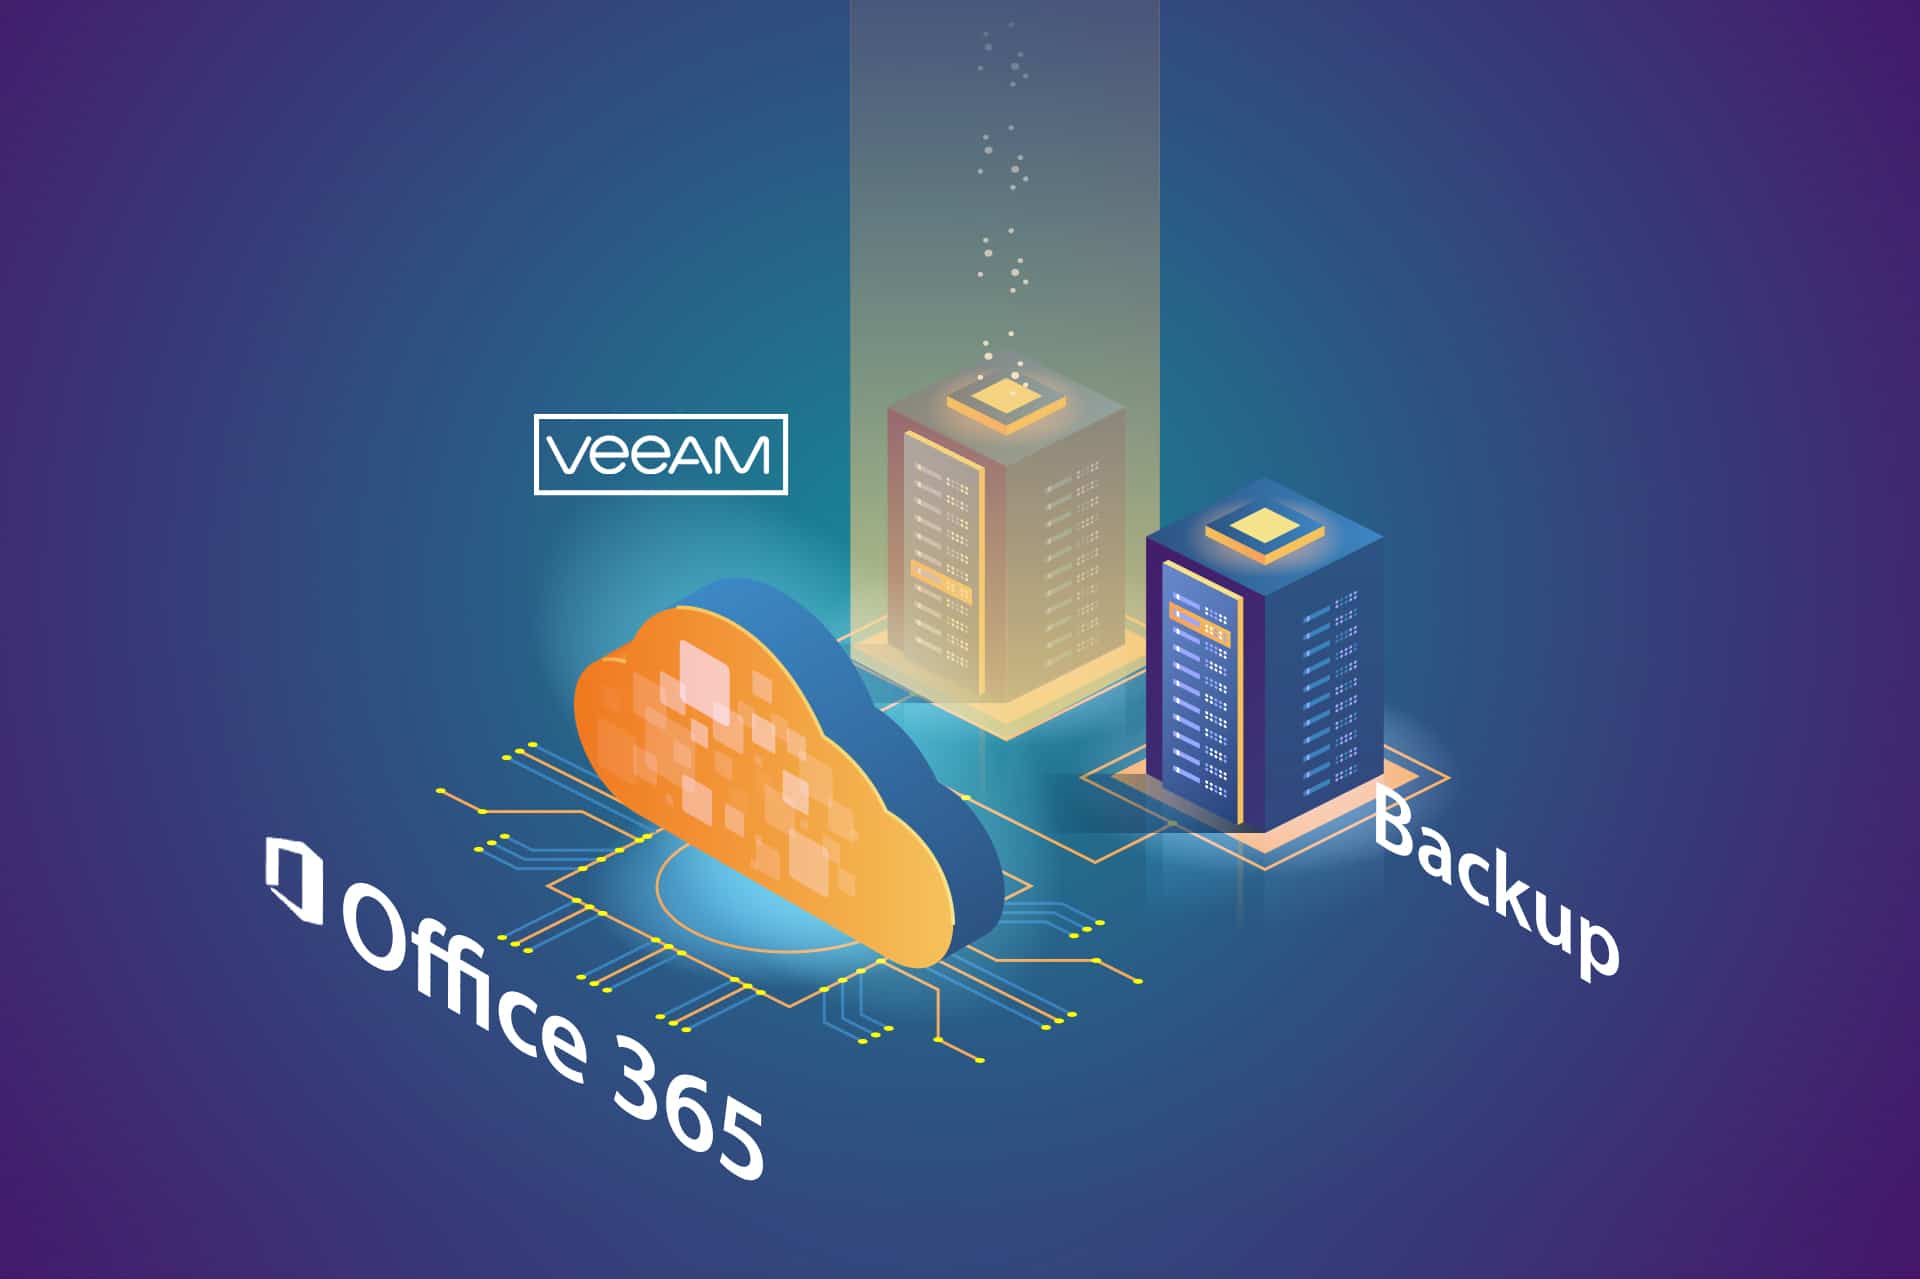 veeam-for-microsoft-backups.jpg